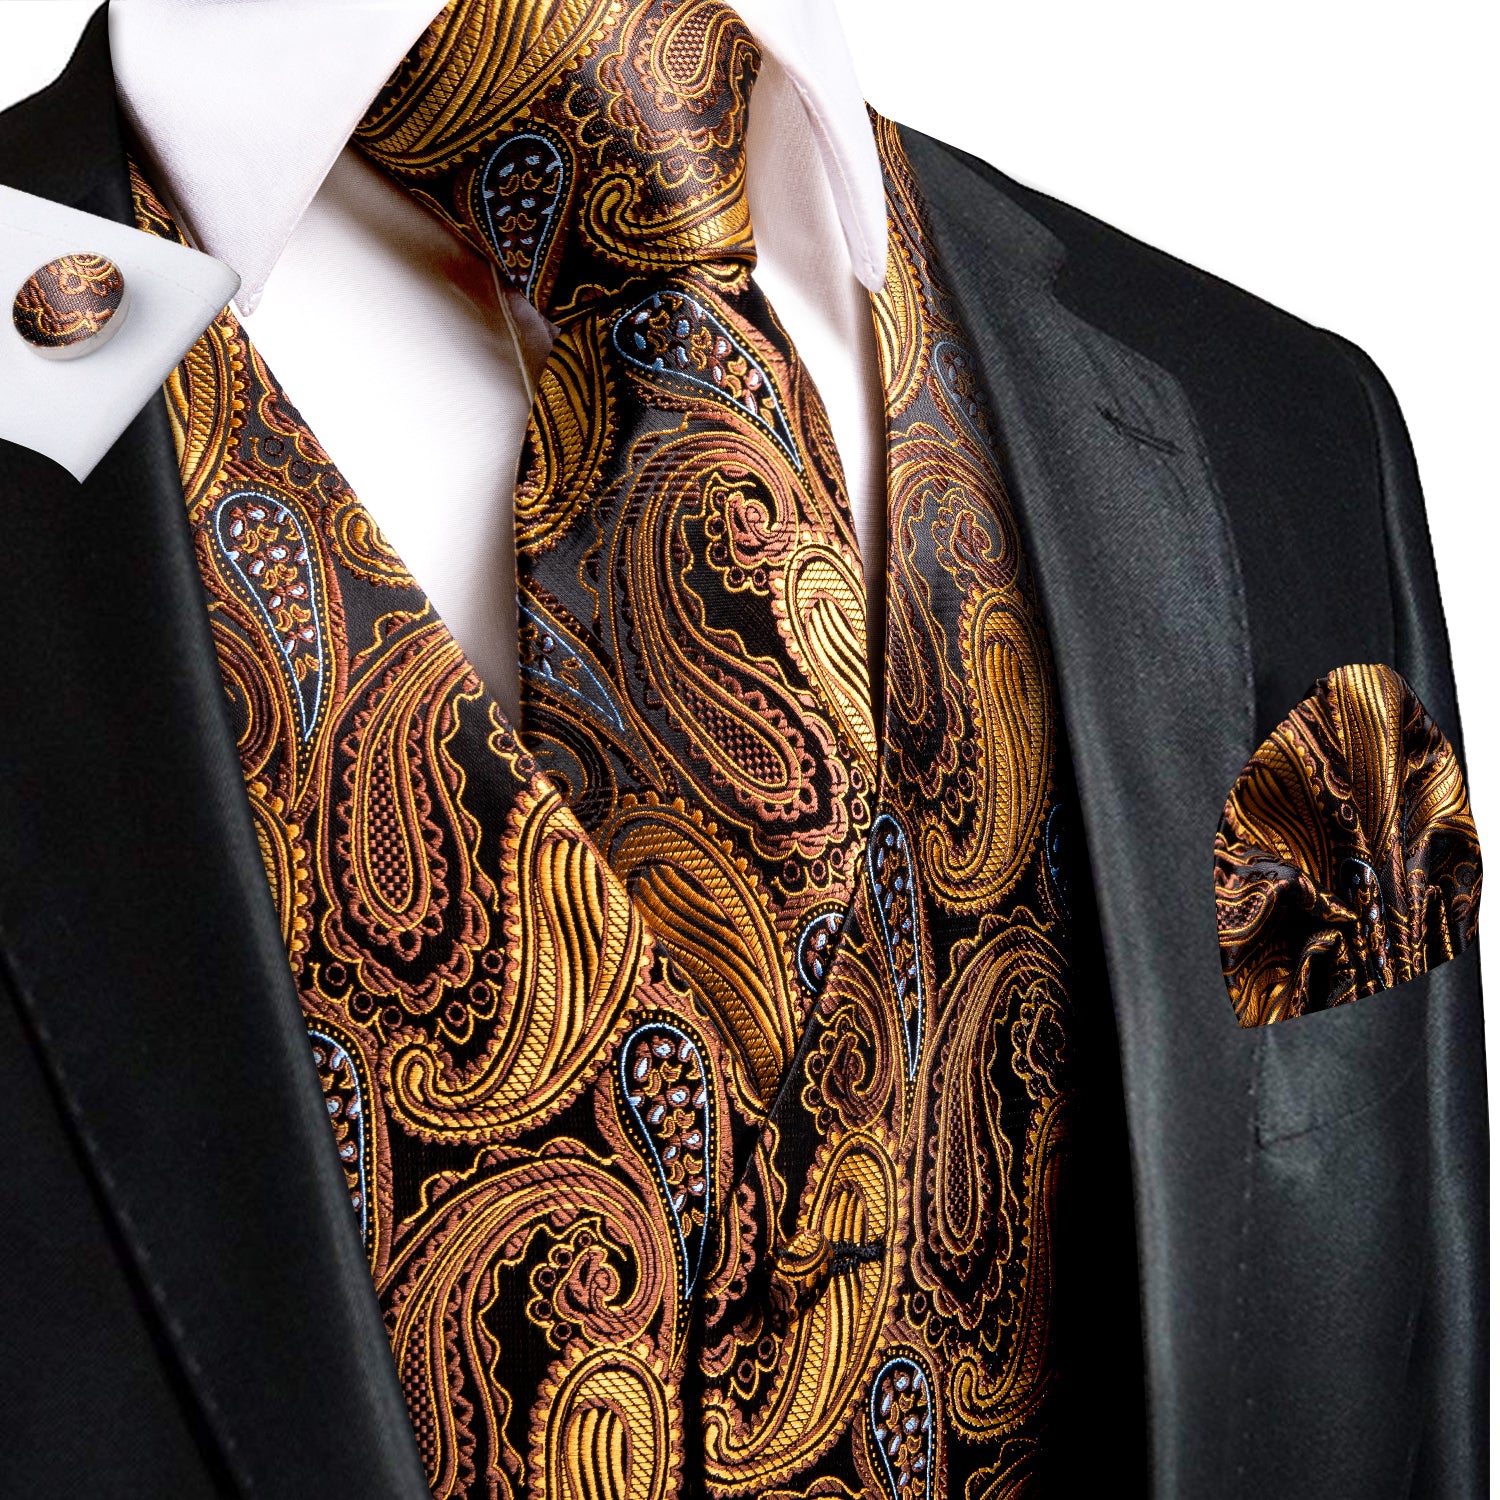 Brown Golden Paisley Silk Men's Vest Hanky Cufflinks Tie Set Waistcoat Suit Set